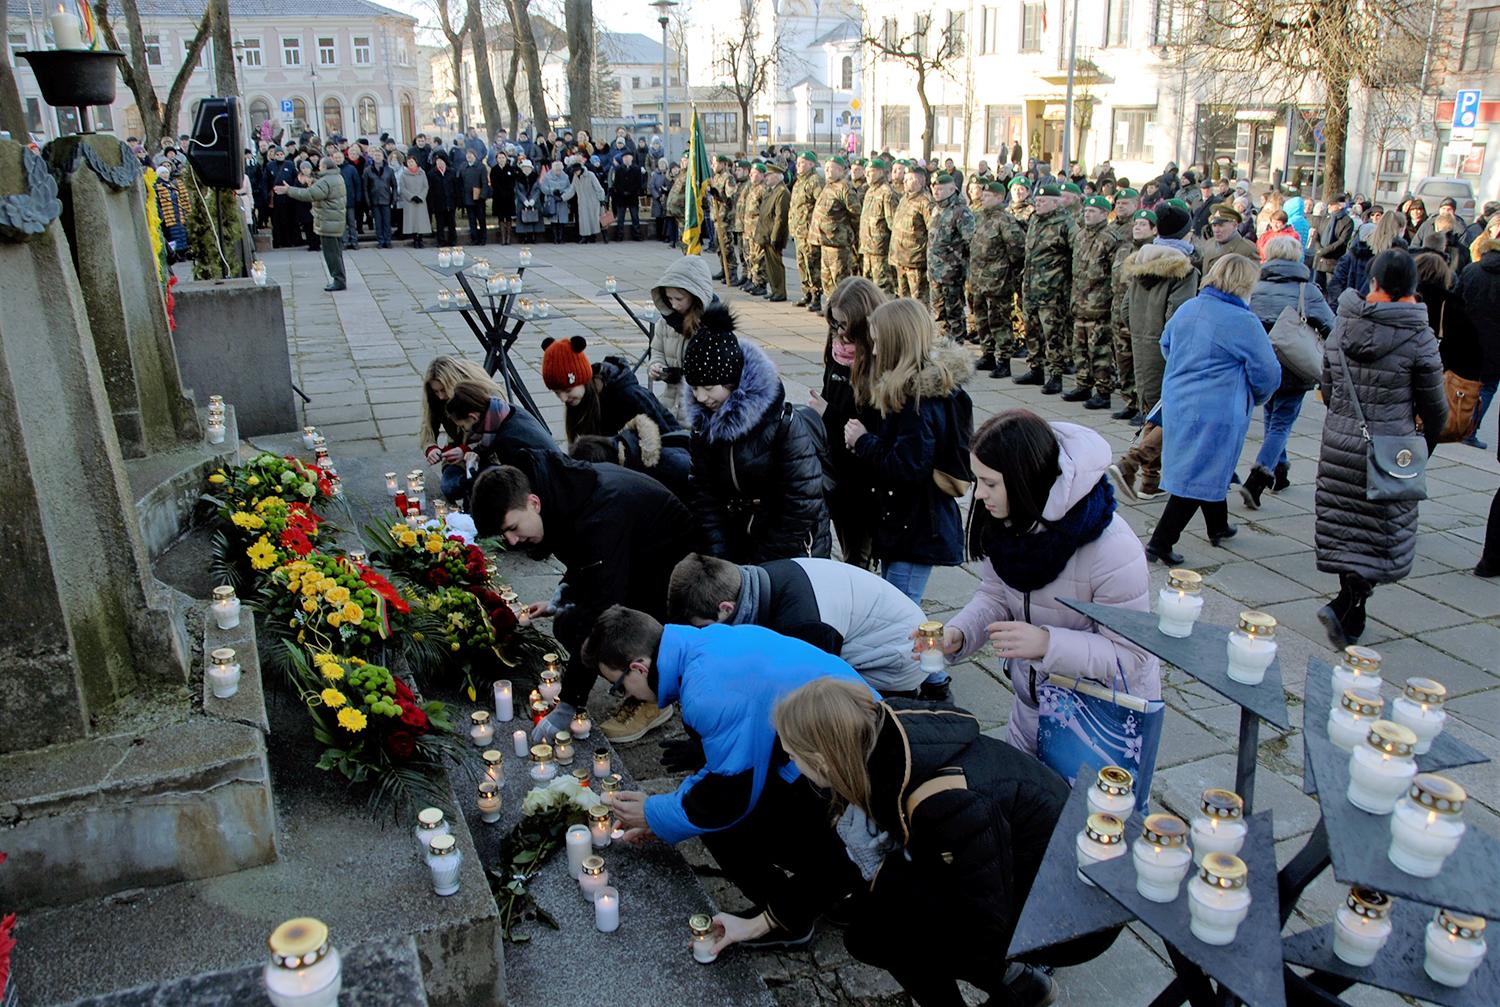 Laisvės gynėjų diena – kartu su ukrainiečiais / Moksleiviai deda žvakutes prie Laisvės paminklo. Gedimino Nemunaičio nuotr.